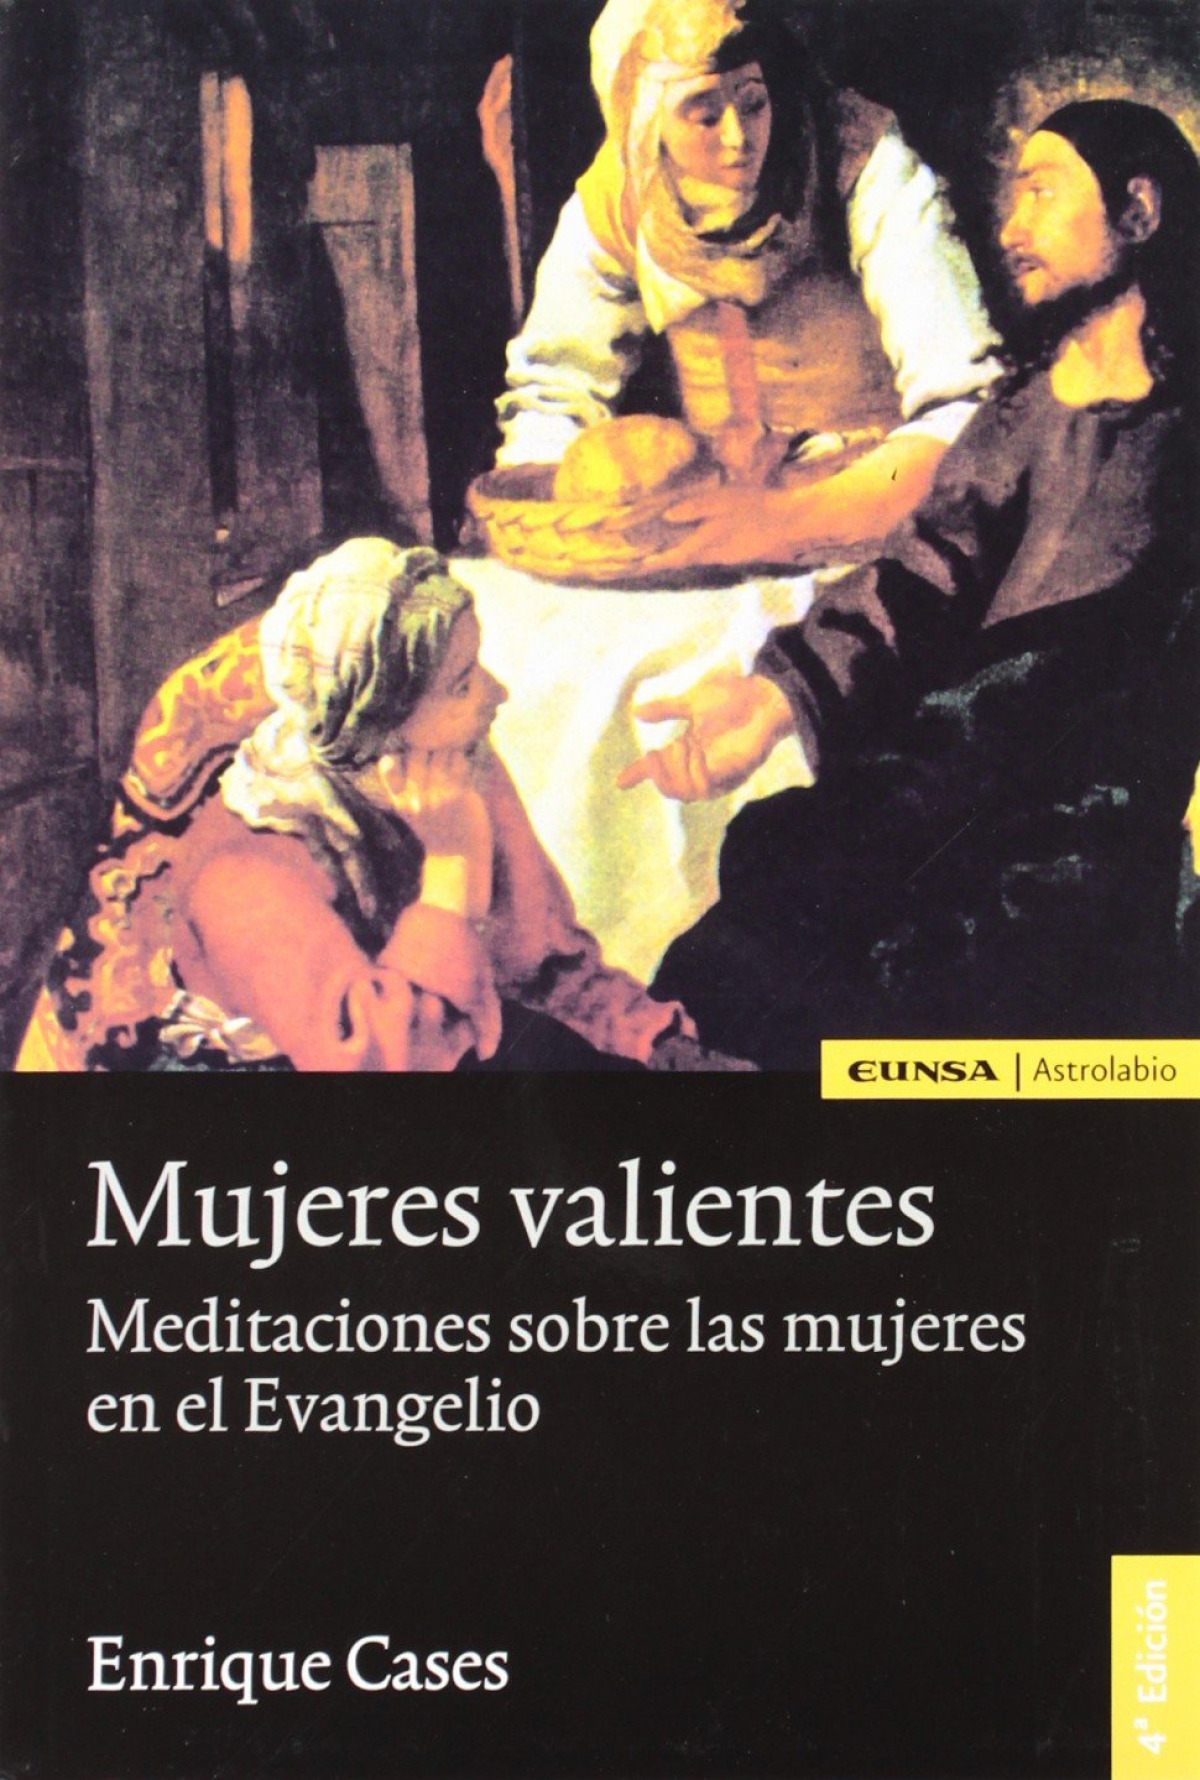 Mujeres valientes meditaciones sobre las mujeres en el Evangelio - Cases Martín, Luis Enrique